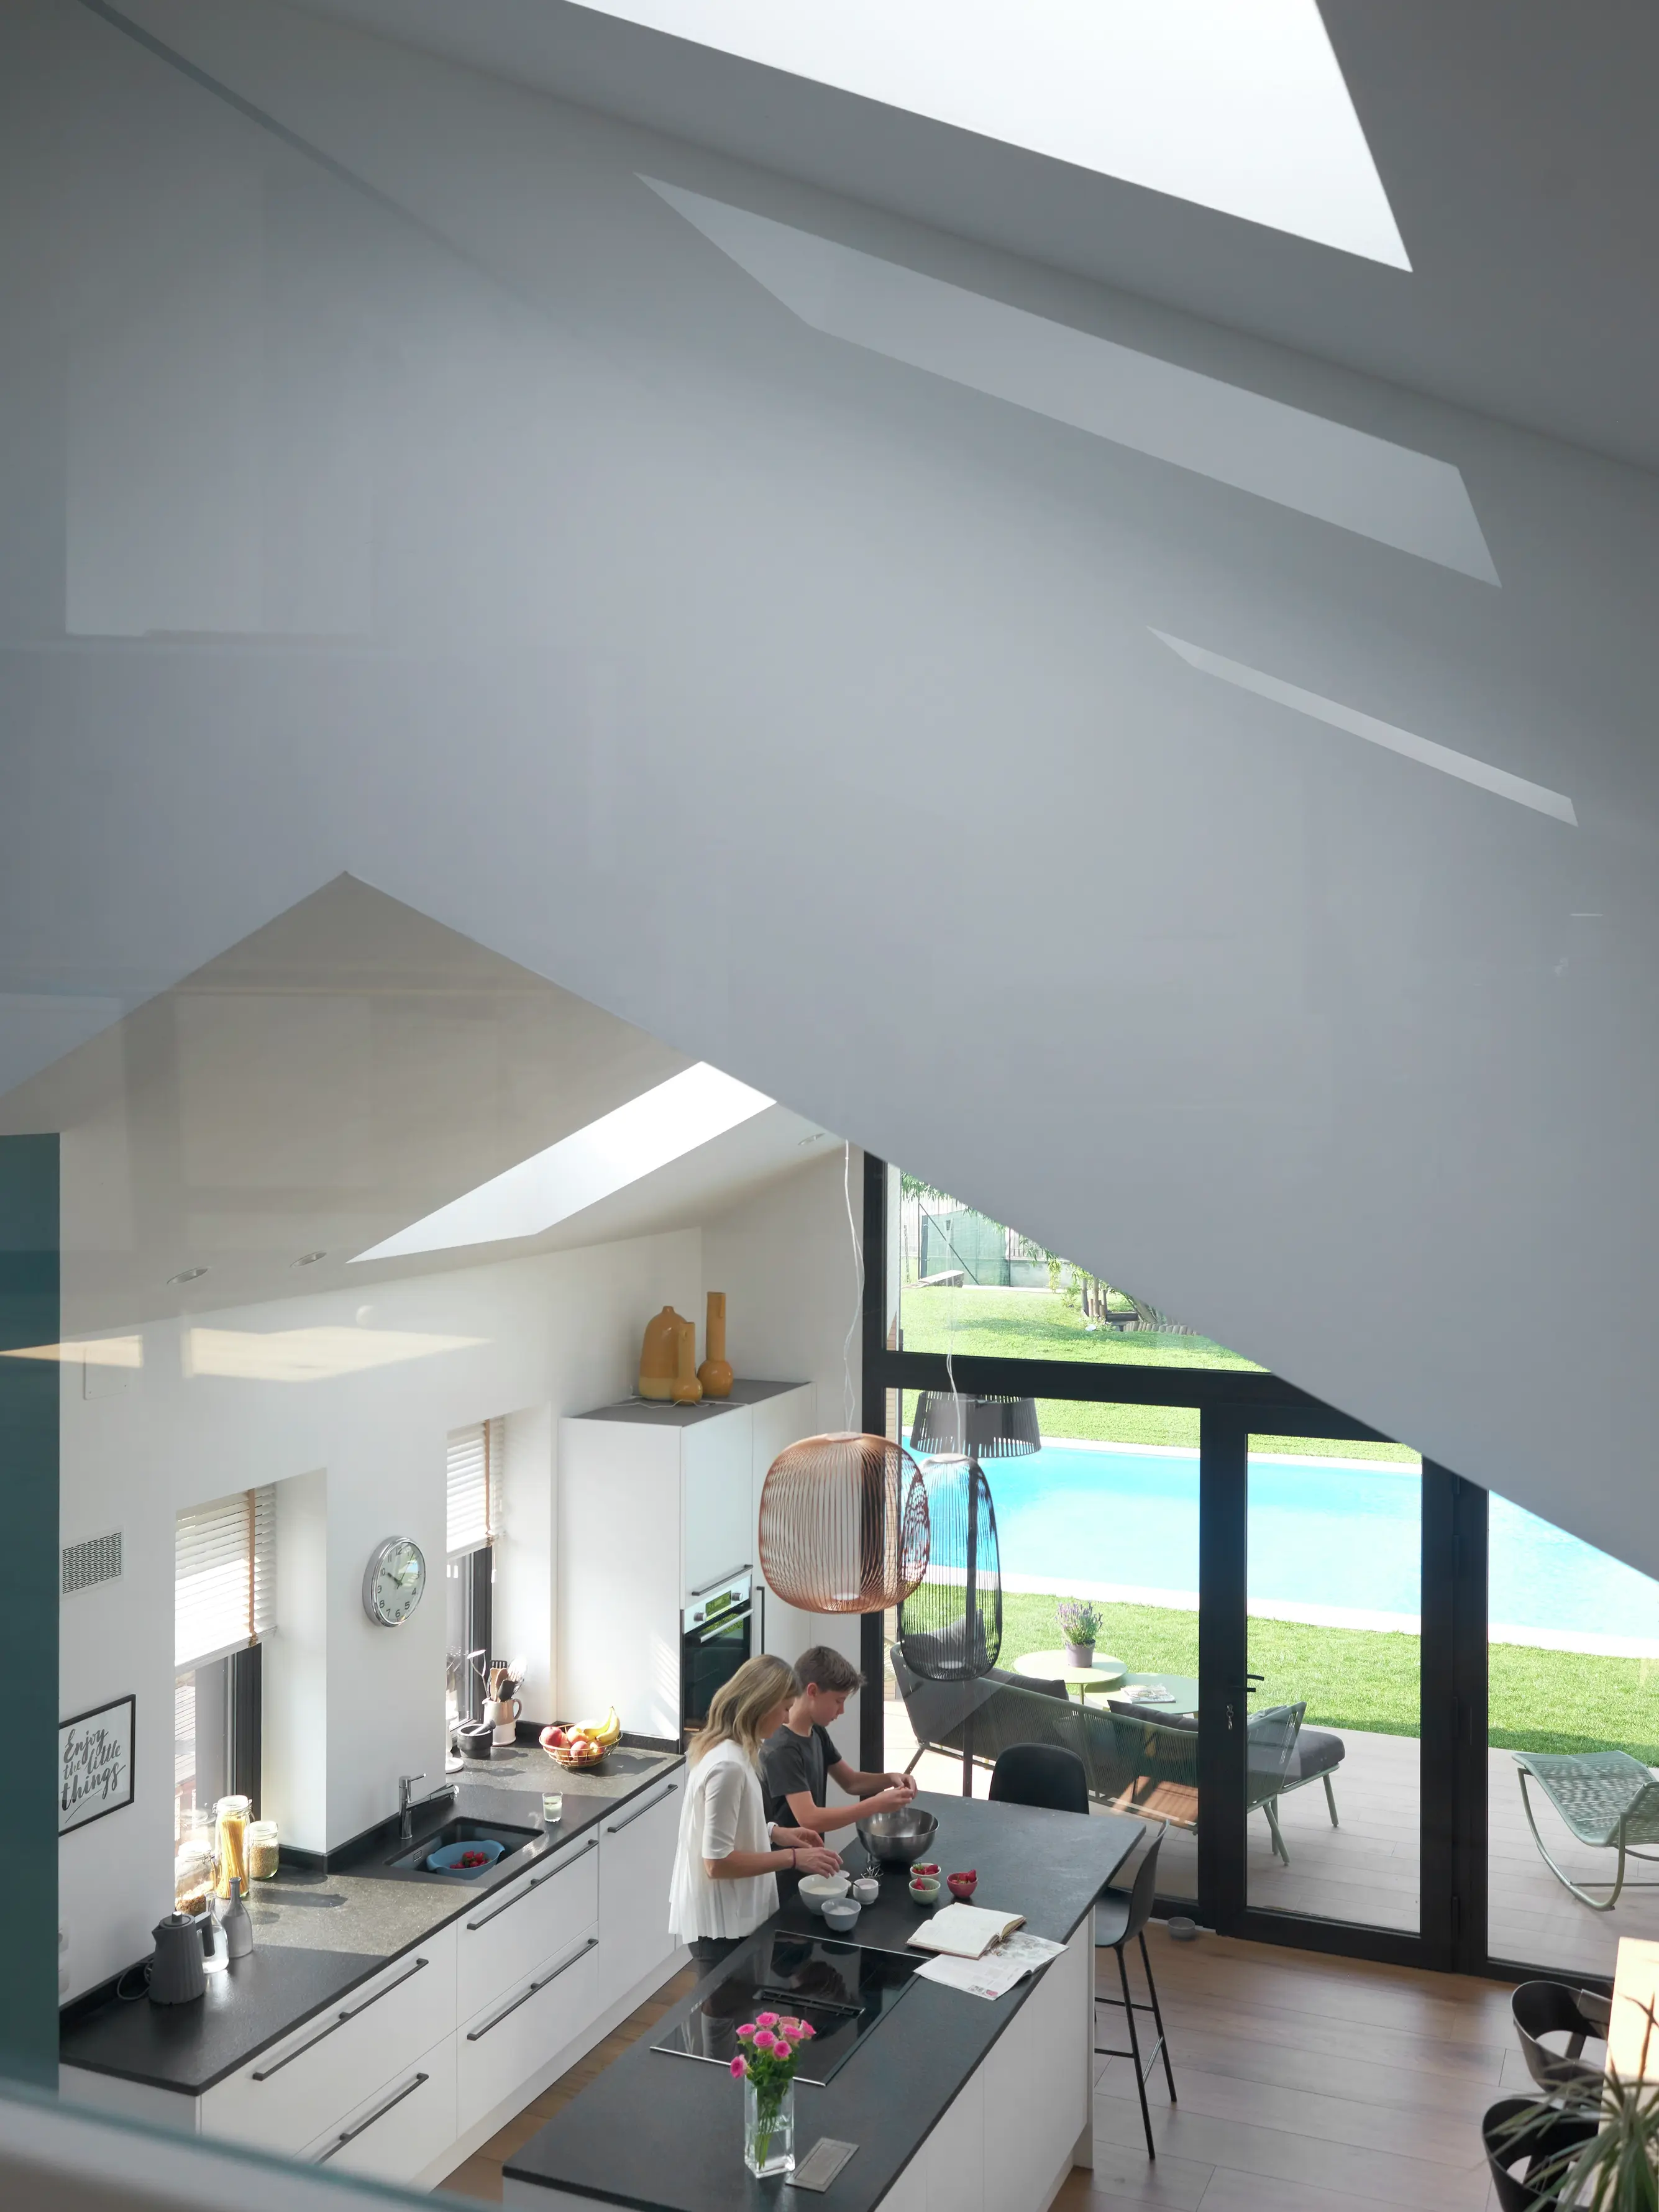 Cucina contemporanea con finestra per tetti VELUX e mobili blu scuro.